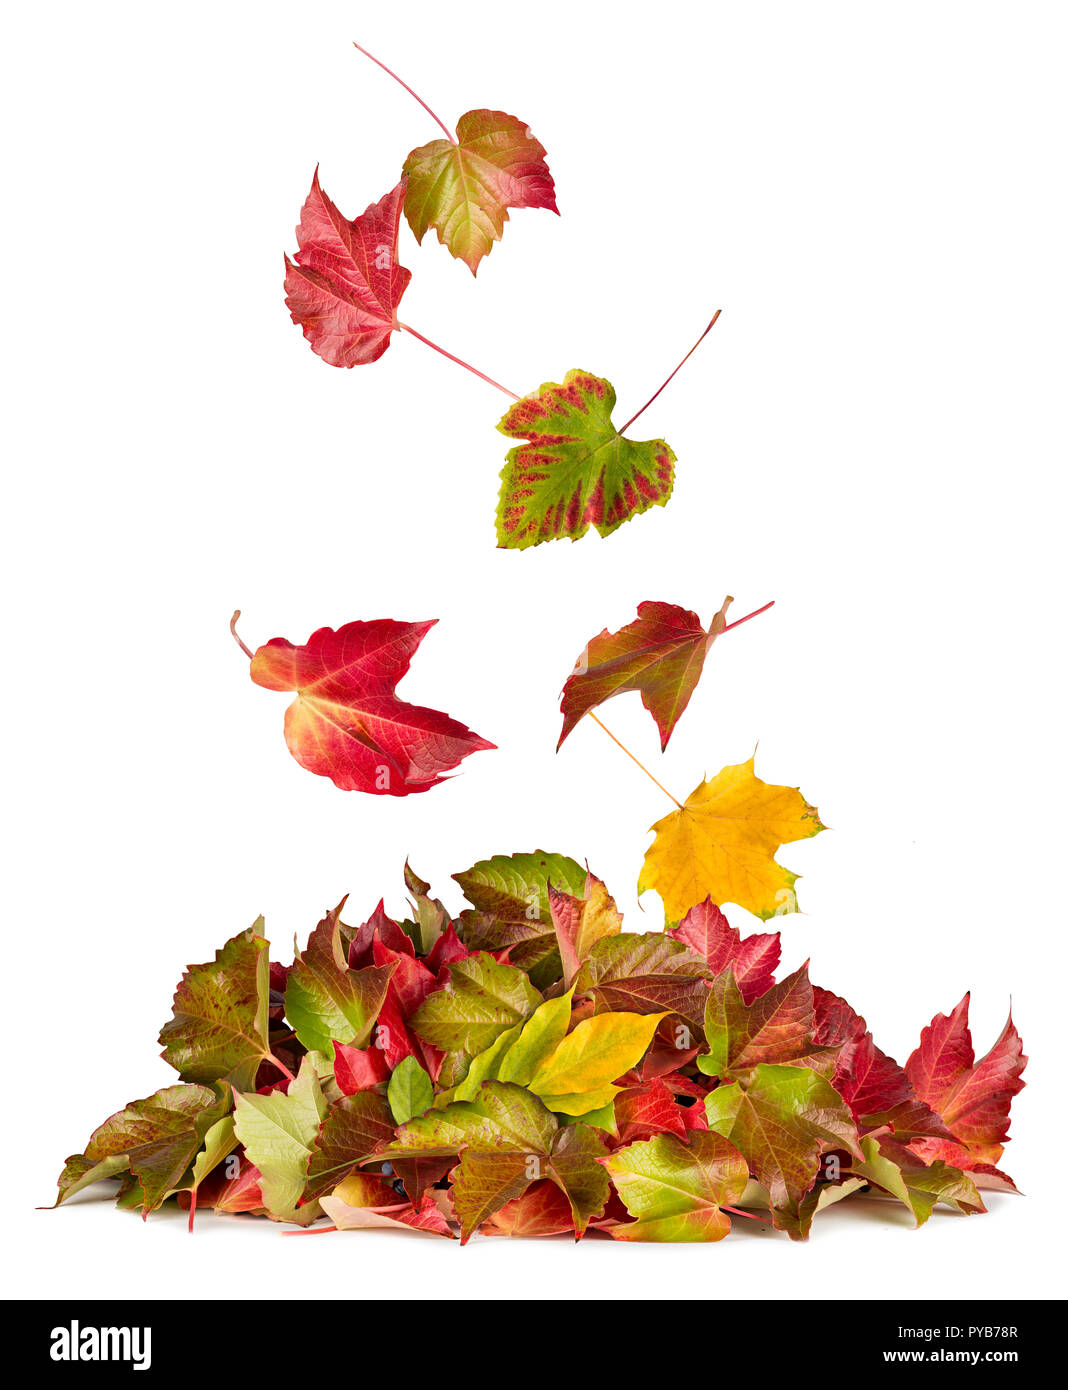 Bunte Herbst fallen nach unten fliegen auf Herbst Haufen Blätter Laub saisonale Konzept auf weißem Hintergrund isoliert Stockfoto